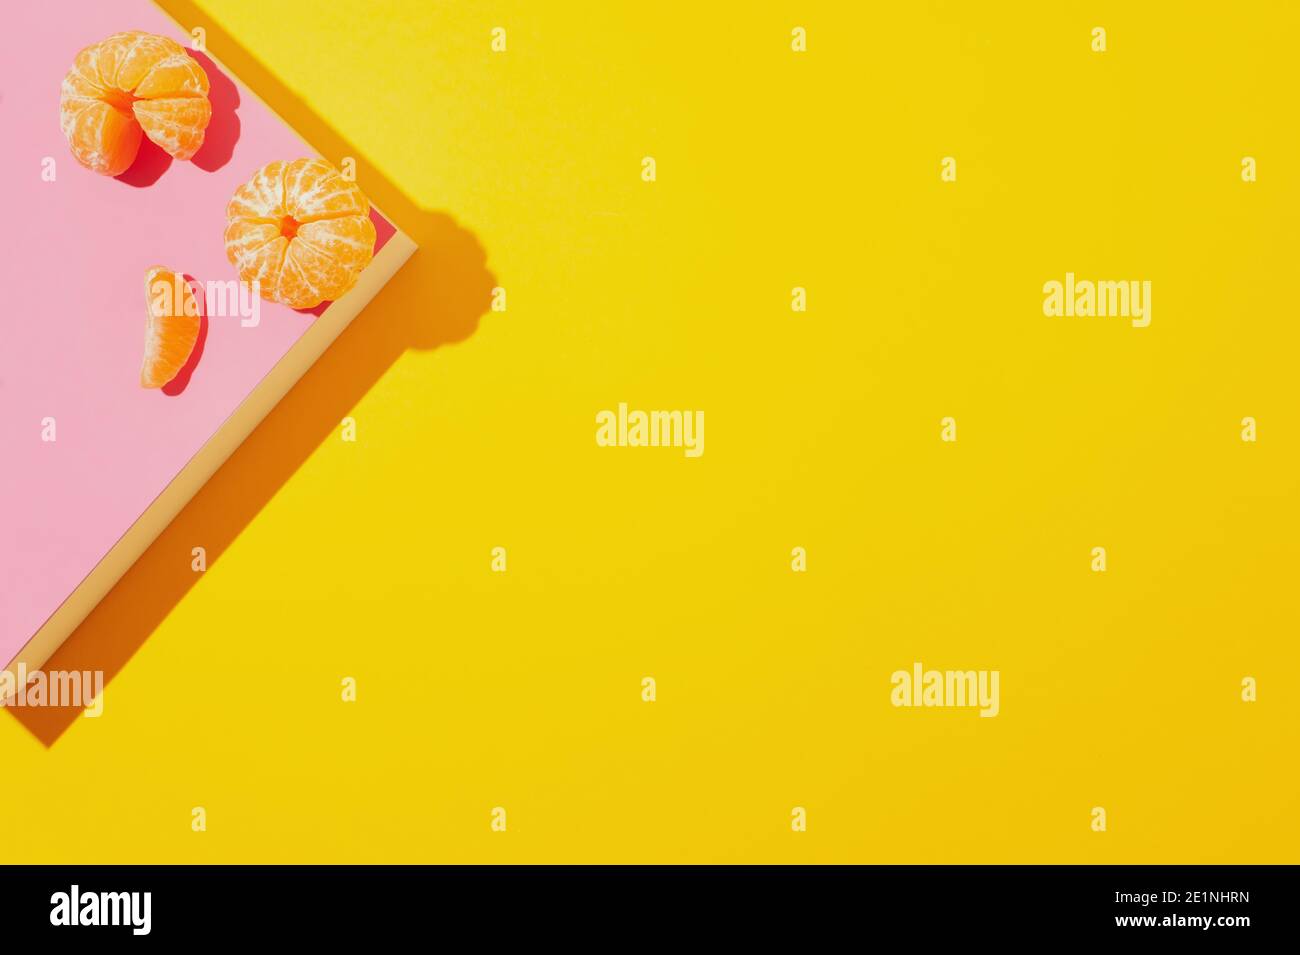 Mise en page créative avec des mandarines pelées sur un podium en papier rose sur fond jaune. Concept d'été abstrait. Image avec des ombres dures. Banque D'Images